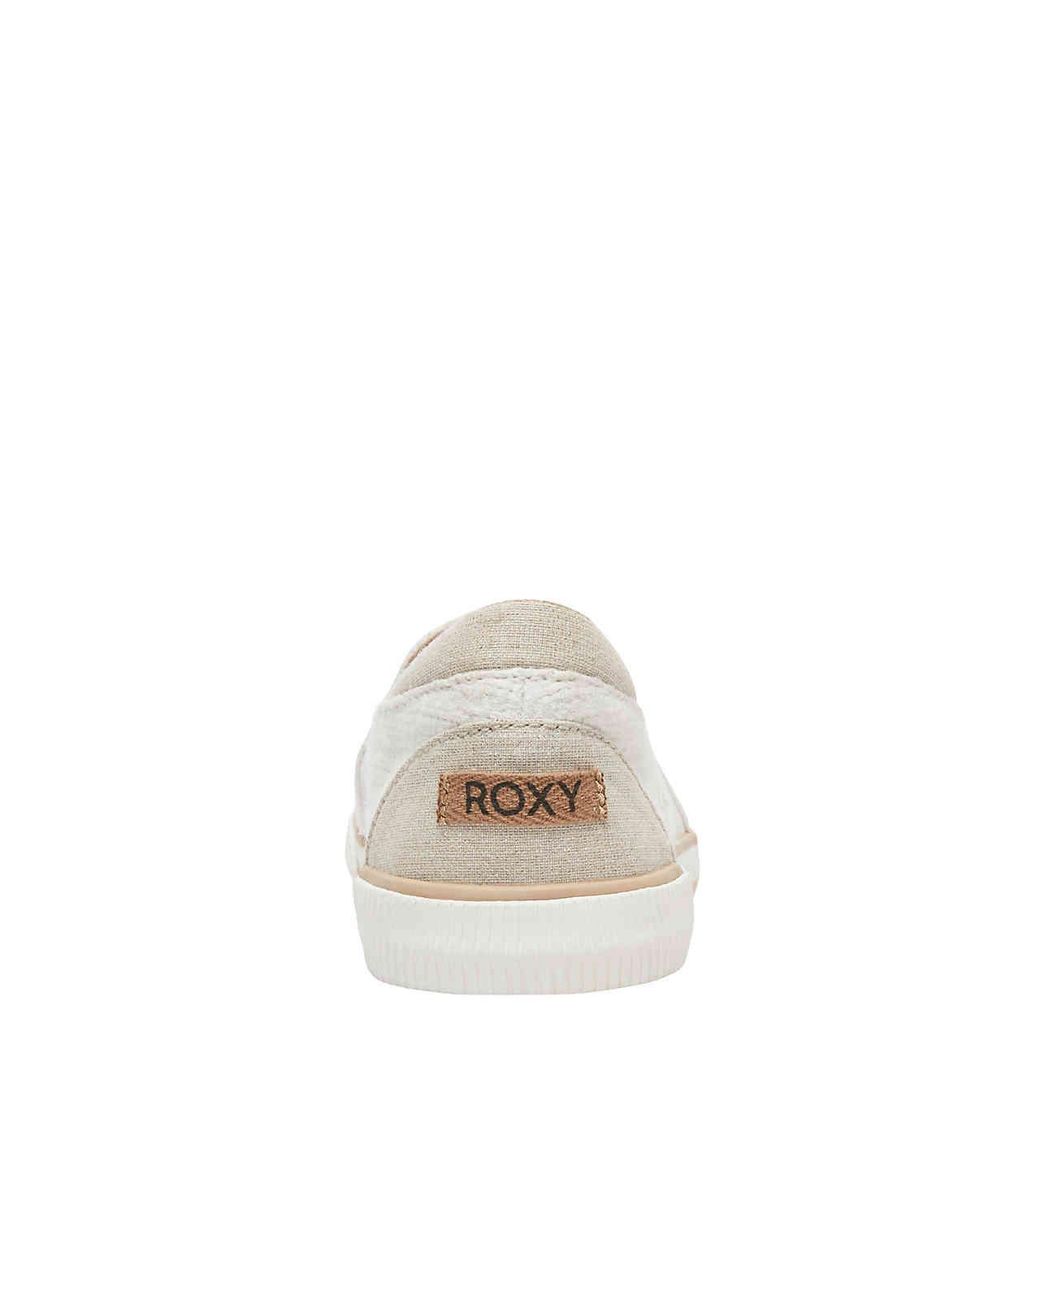 Roxy Brayden Slip-on Sneaker in White | Lyst